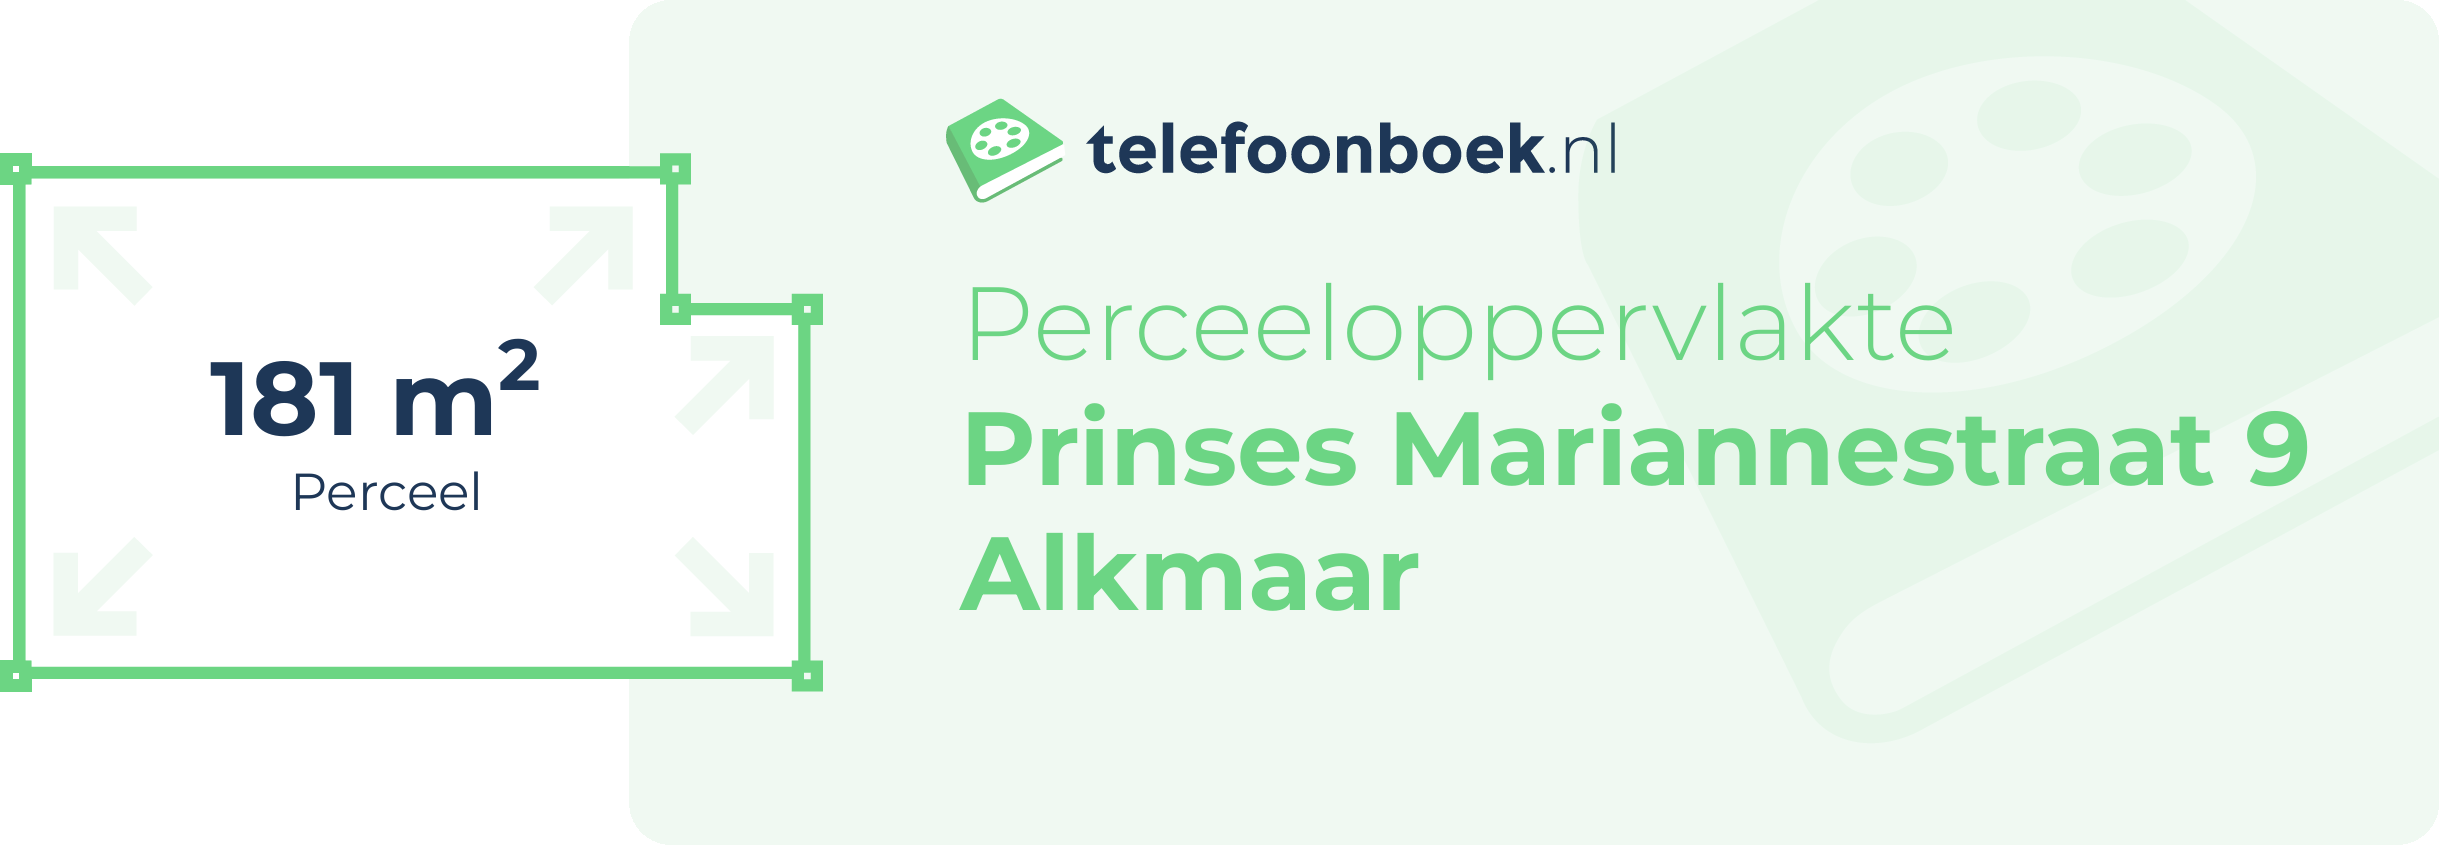 Perceeloppervlakte Prinses Mariannestraat 9 Alkmaar